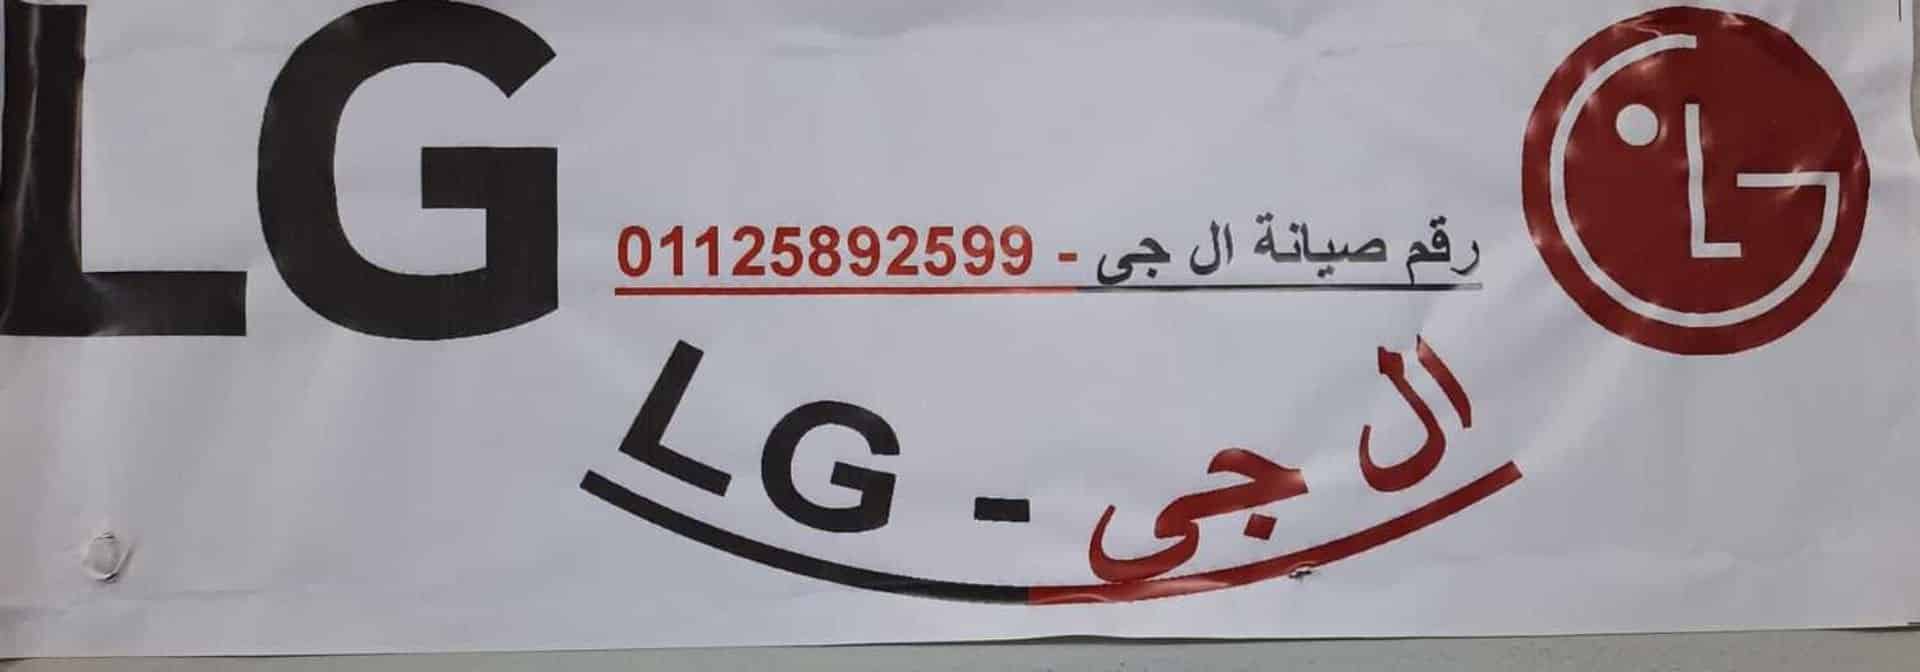 مركز اصلاح غسالات LG كوم حماده 01010916814